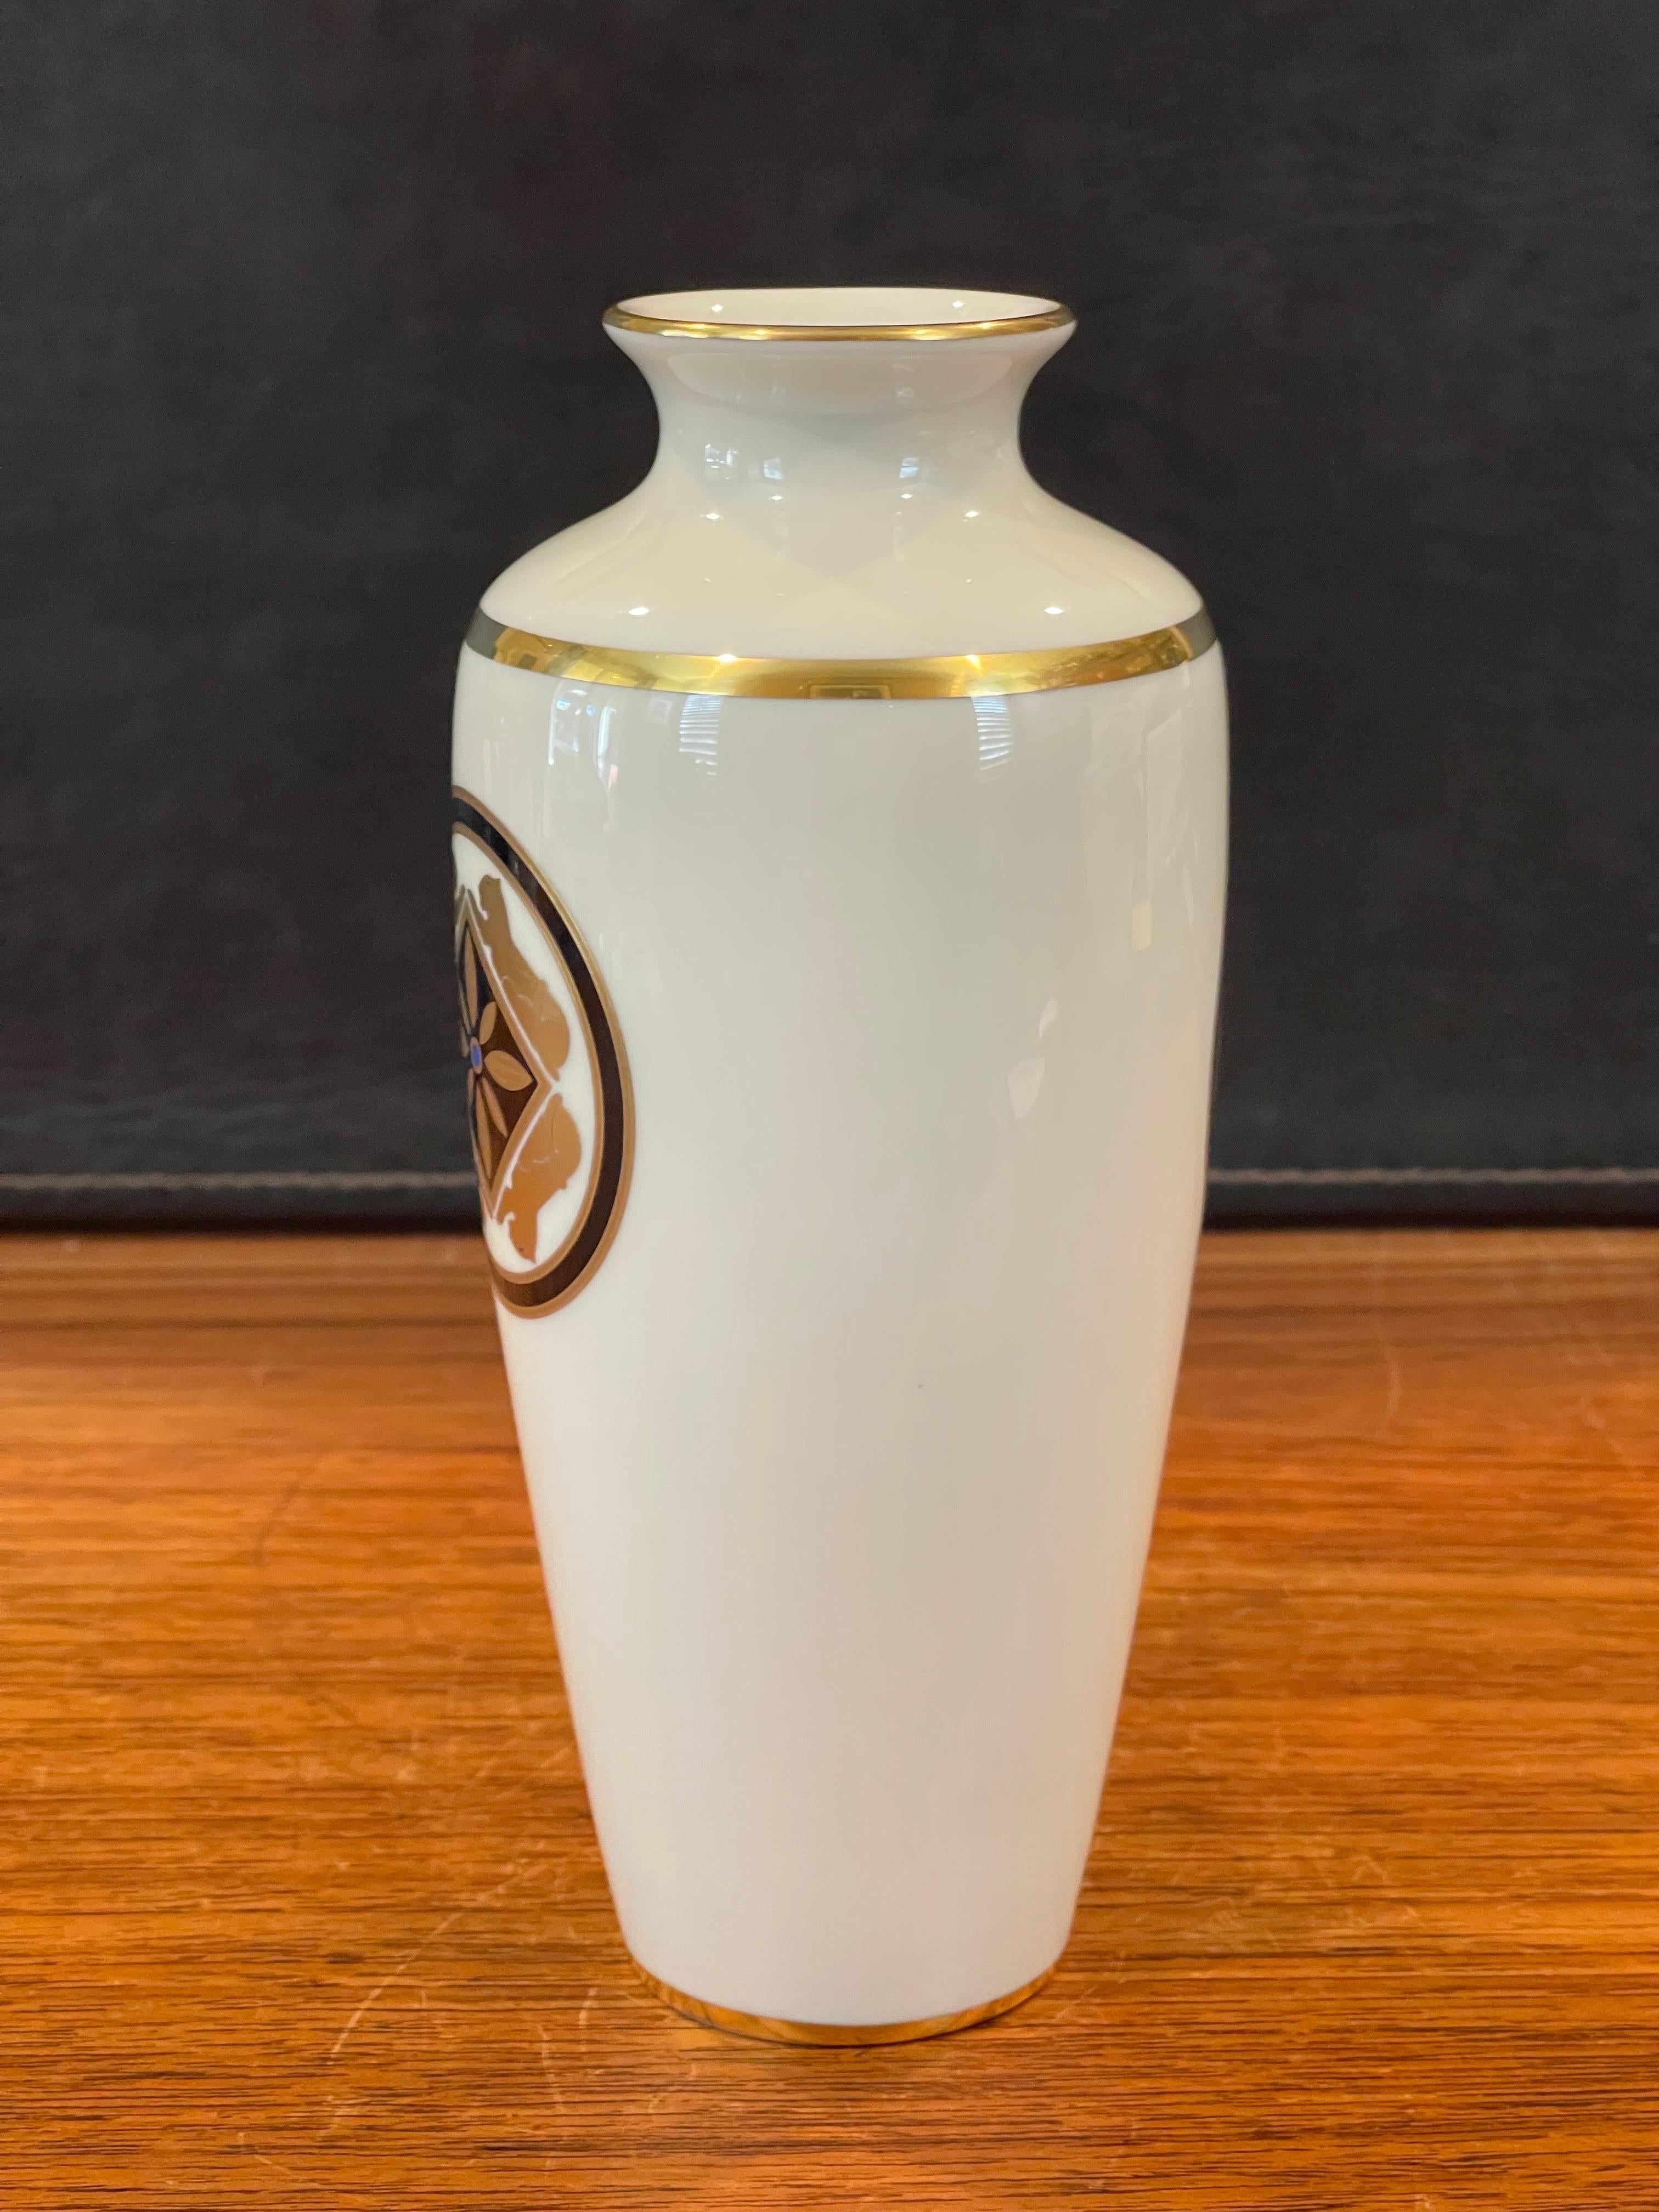 La Maison de L' Art Deco Porcelain Vase by Cartier In Good Condition For Sale In San Diego, CA